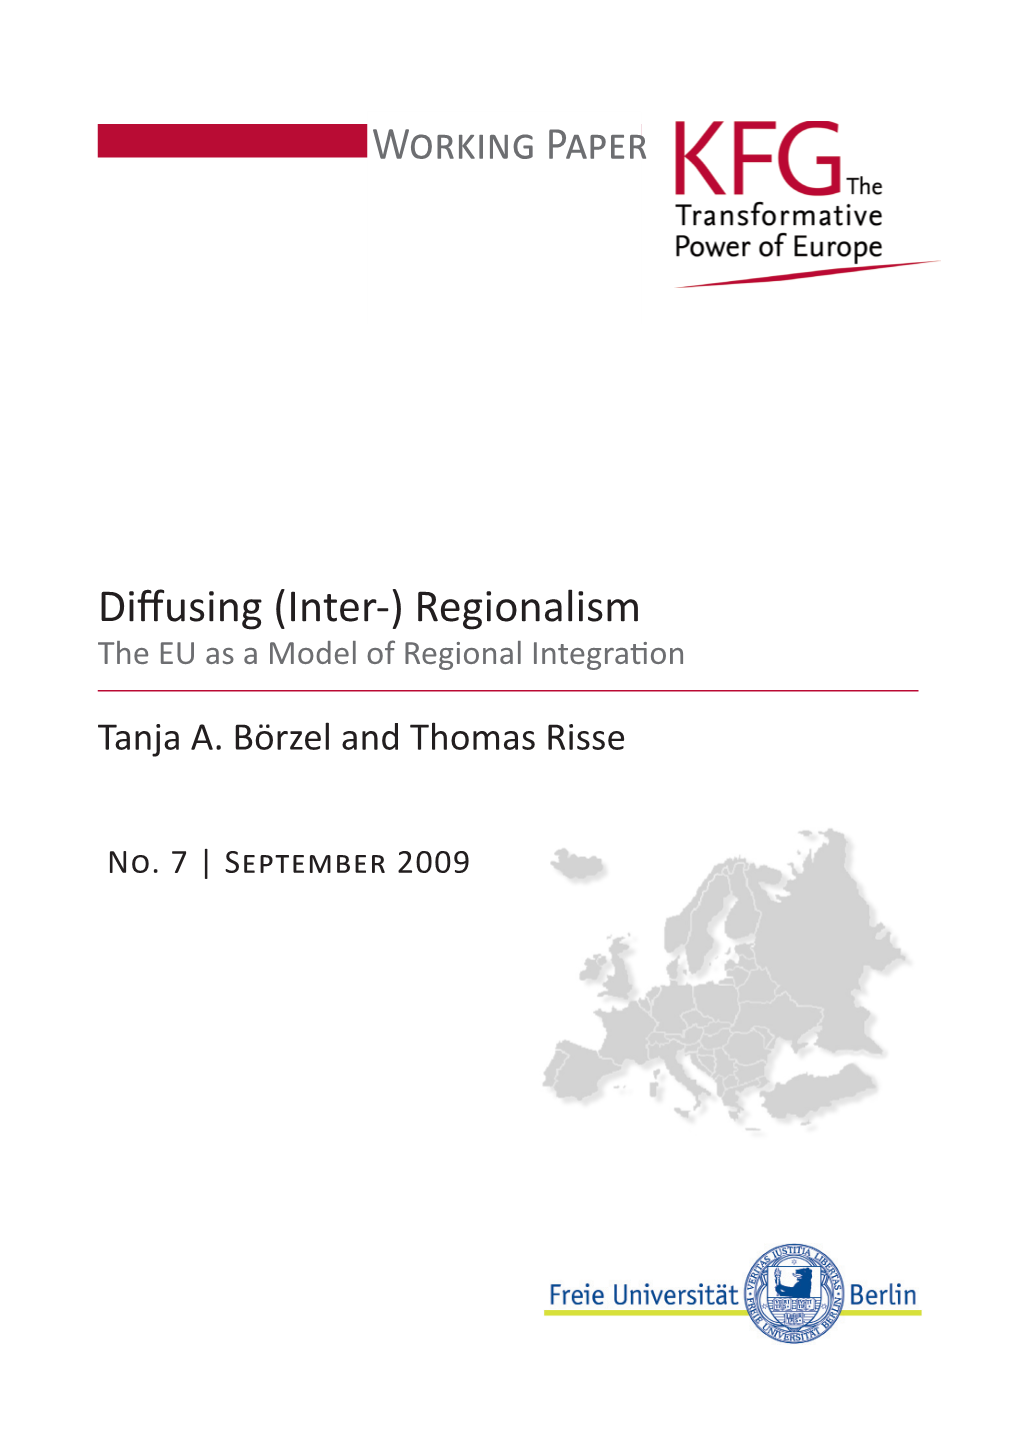 (Inter-) Regionalism Working Paper